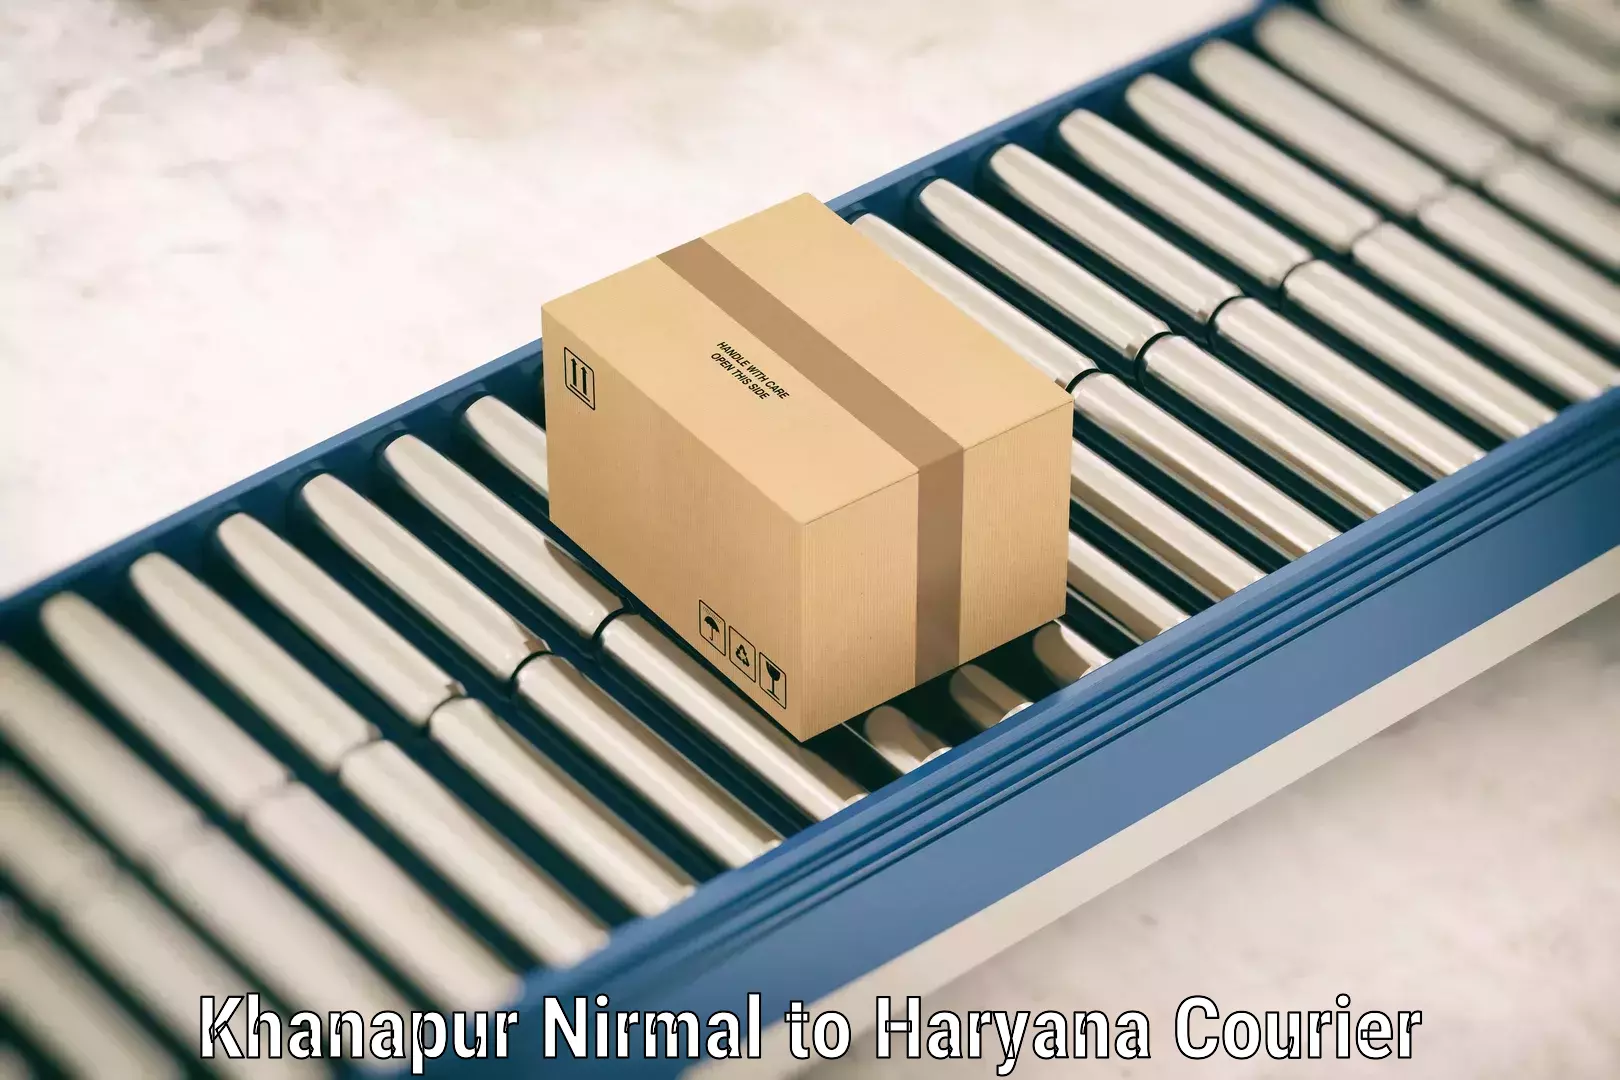 Baggage delivery optimization Khanapur Nirmal to Kalanwali